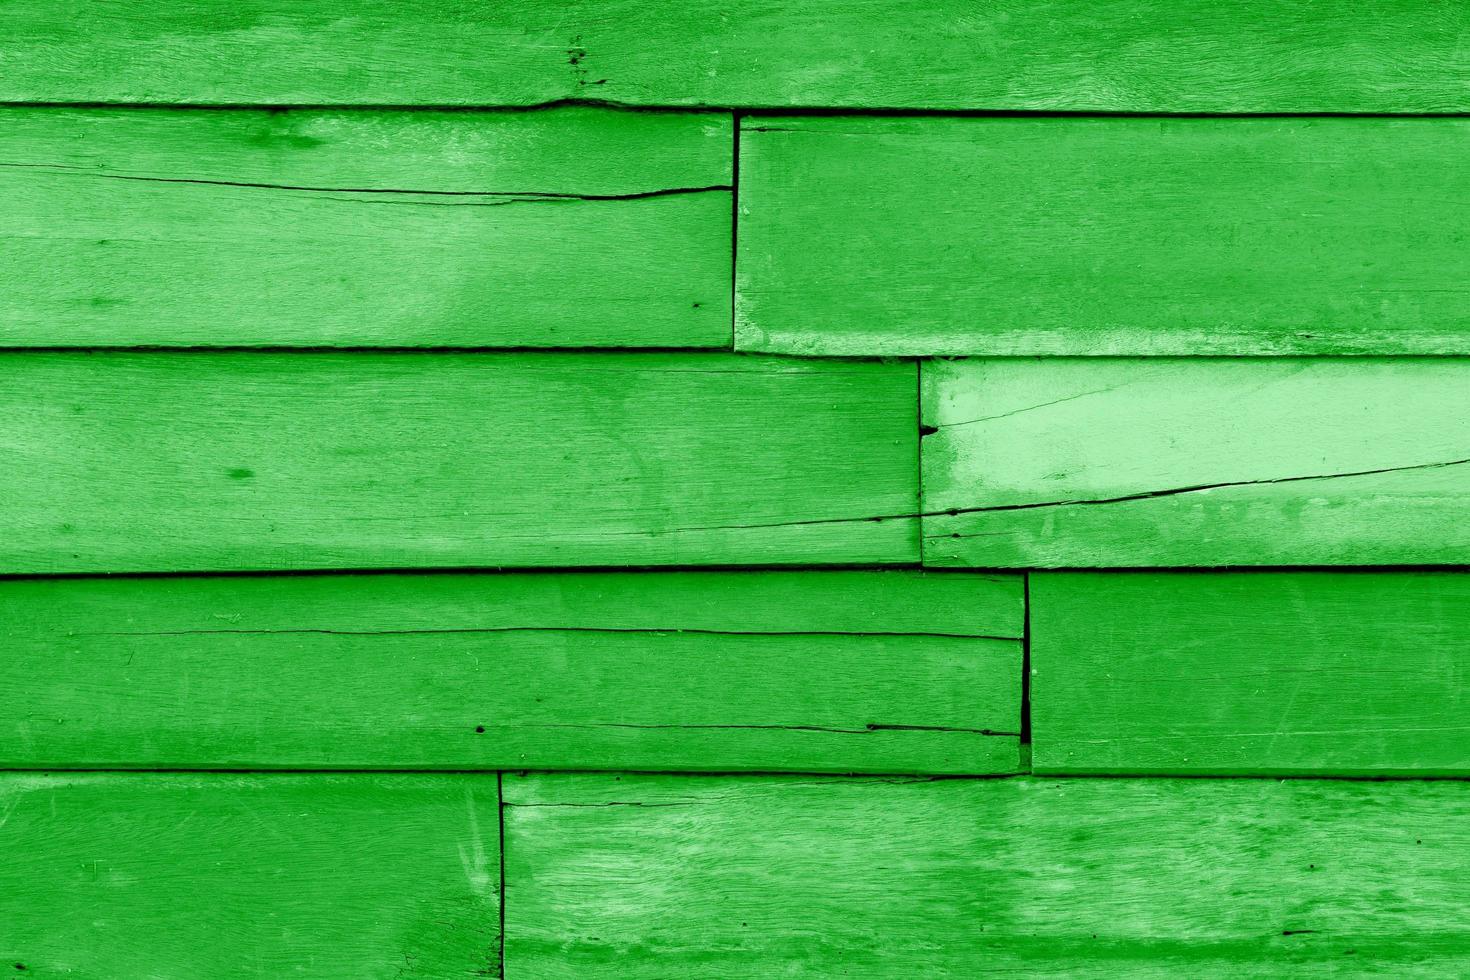 grüne Holzplankenstruktur, abstrakter Hintergrund, Ideengrafikdesign für Webdesign oder Banner foto